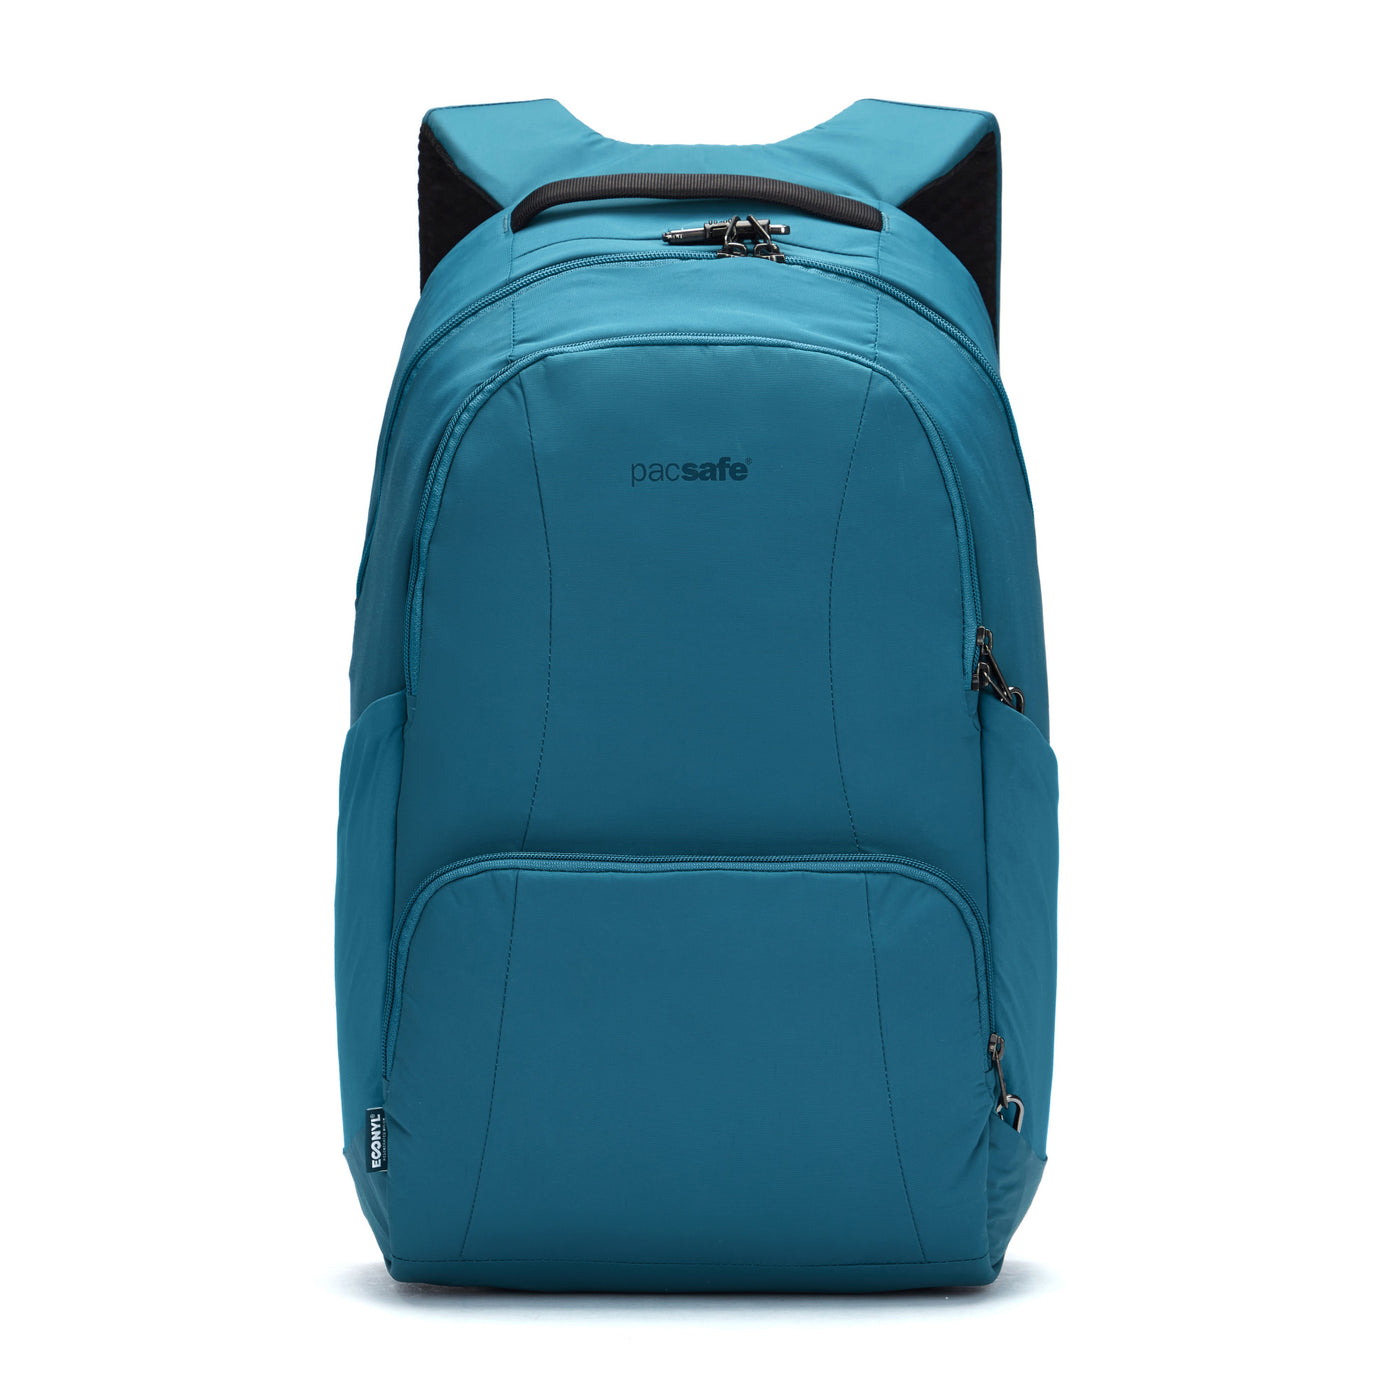 Metrosafe LS450 25L Backpack